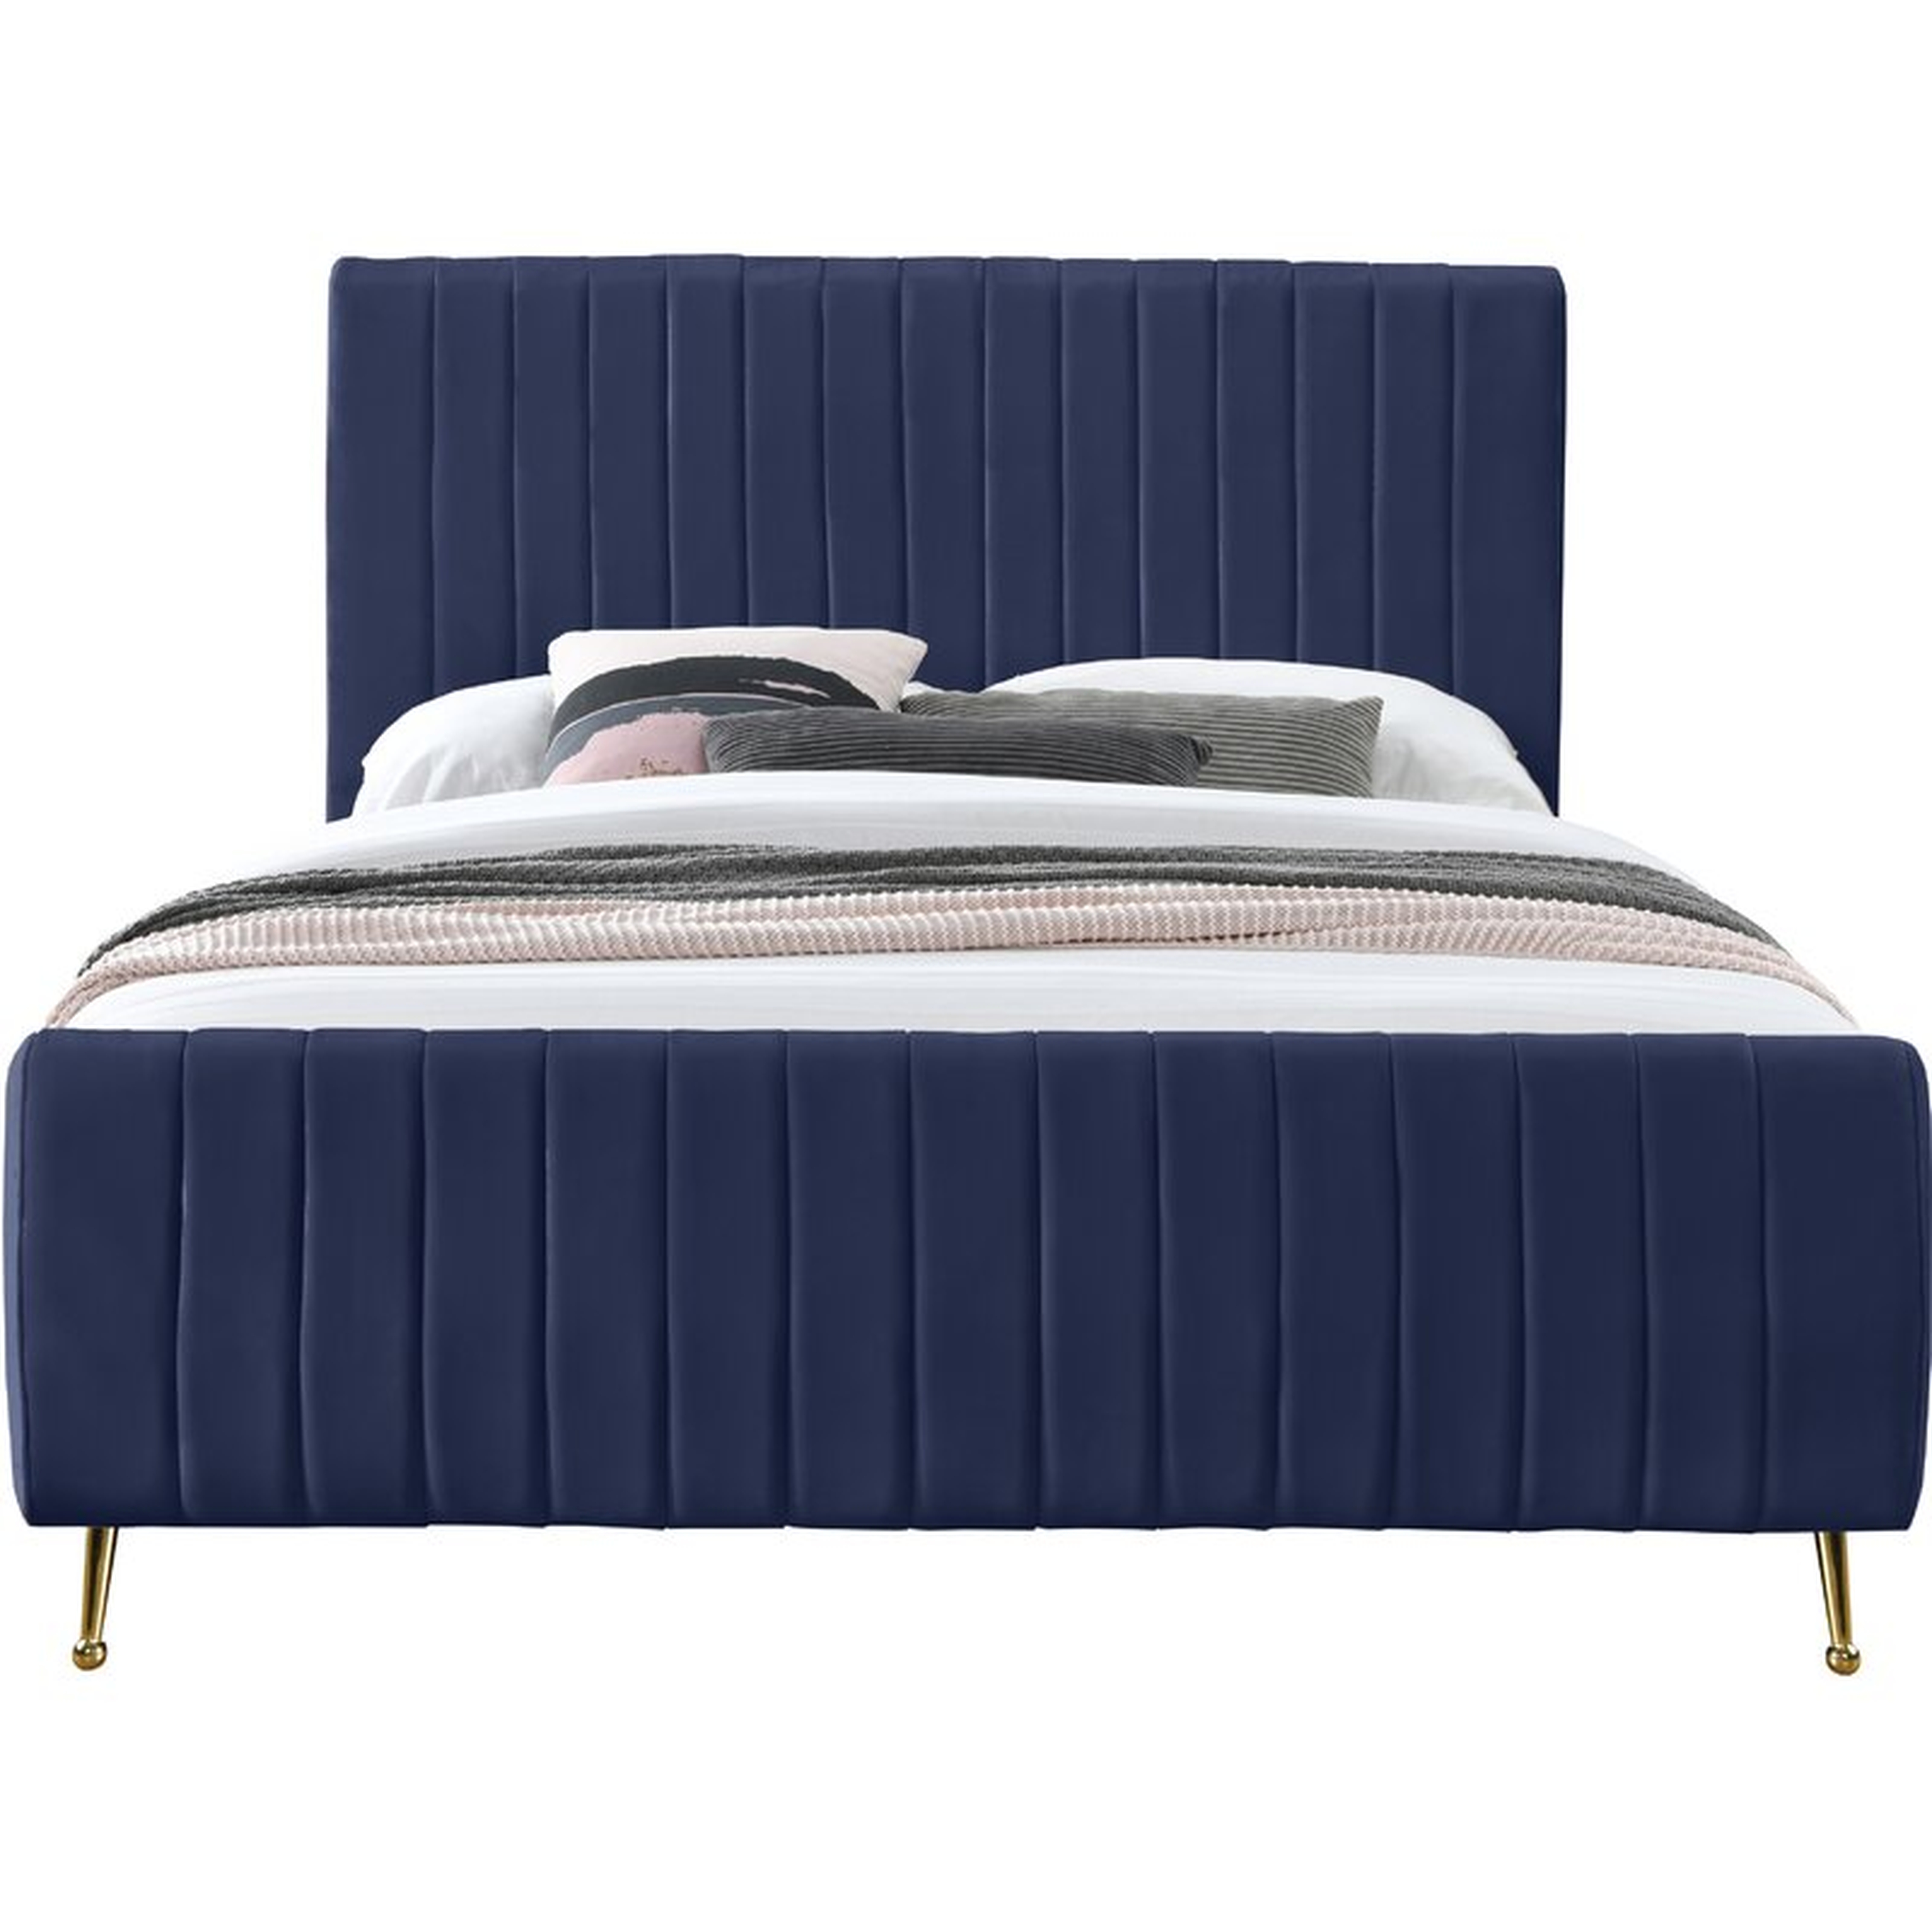 Summersville Tufted Upholstered Low Profile Platform Bed - Wayfair